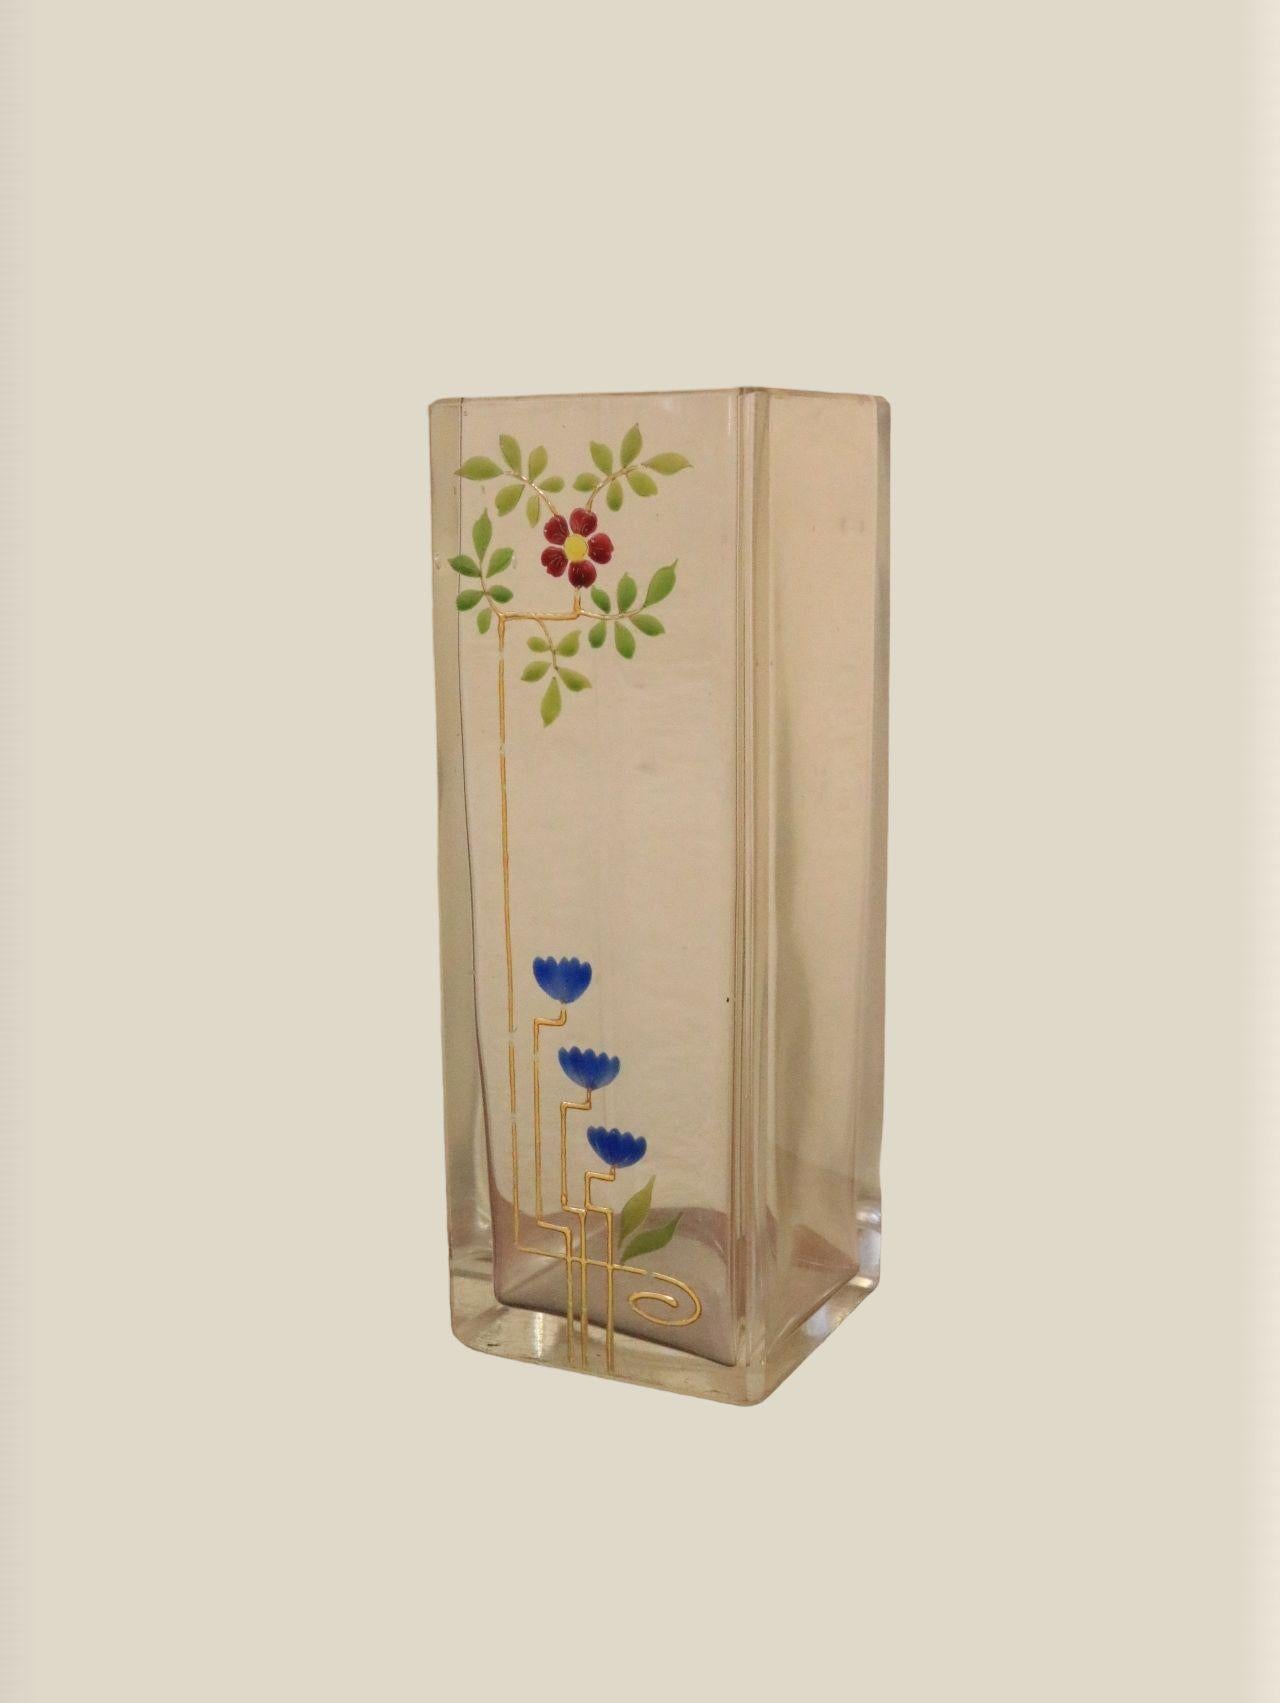 Très beau vase original en verre art nouveau.
De Josef Riedel, Polaun.

Provenant d'une collection privée d'art nouveau.
Bien conservé, avec de légers frottements dorés sur le bord supérieur.

Hauteur : 15 cm
Largeur : 5,3 cm / 2.09 inch